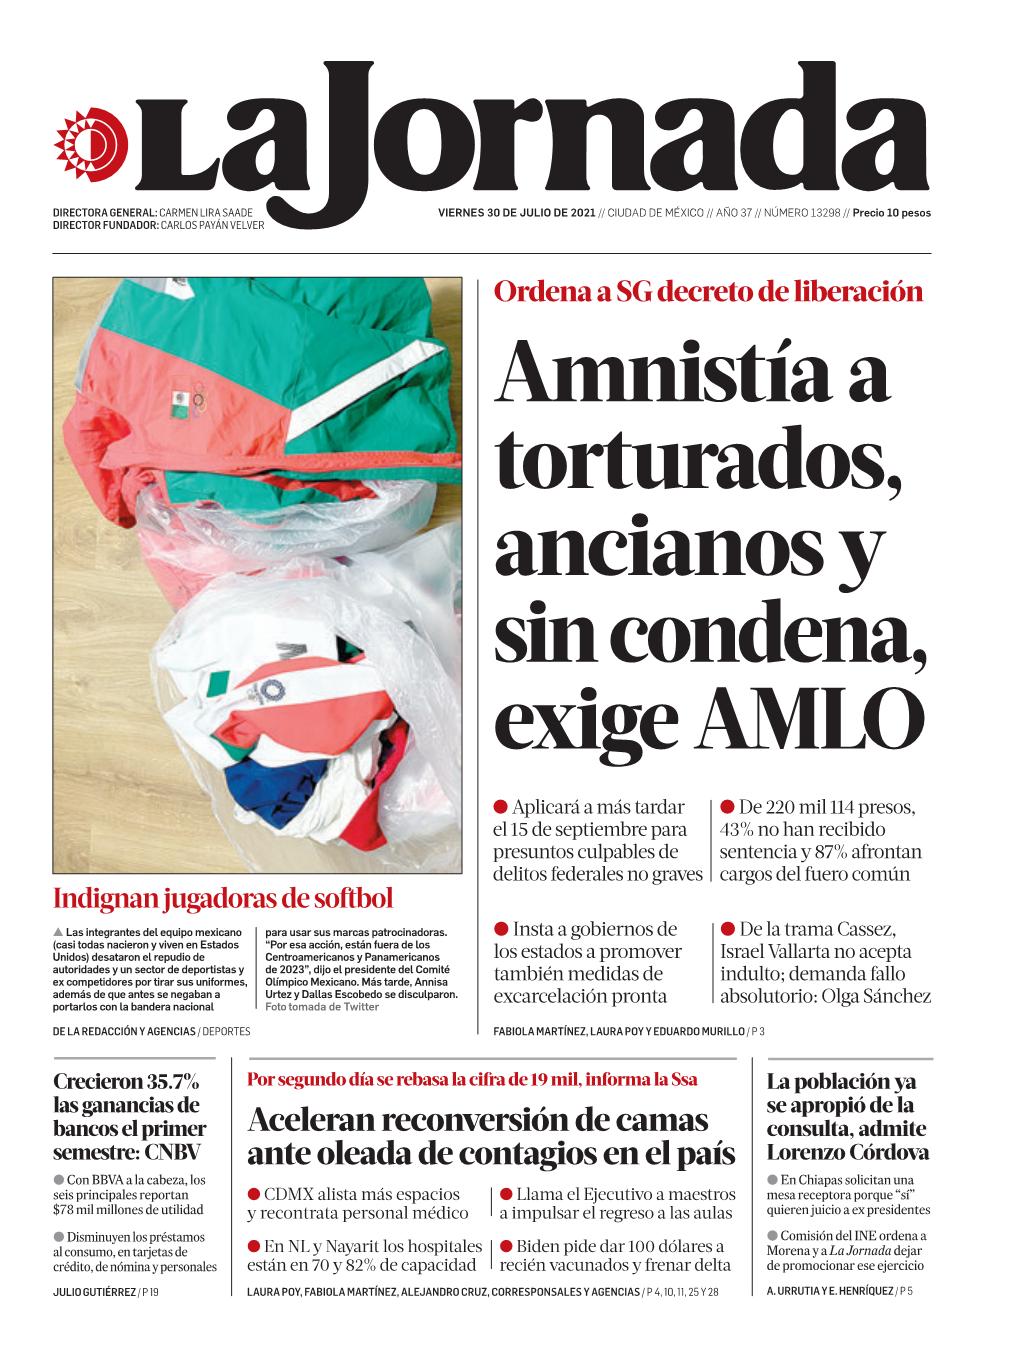 Aceleran Reconversión De Camas Ante Oleada De Contagios En El País